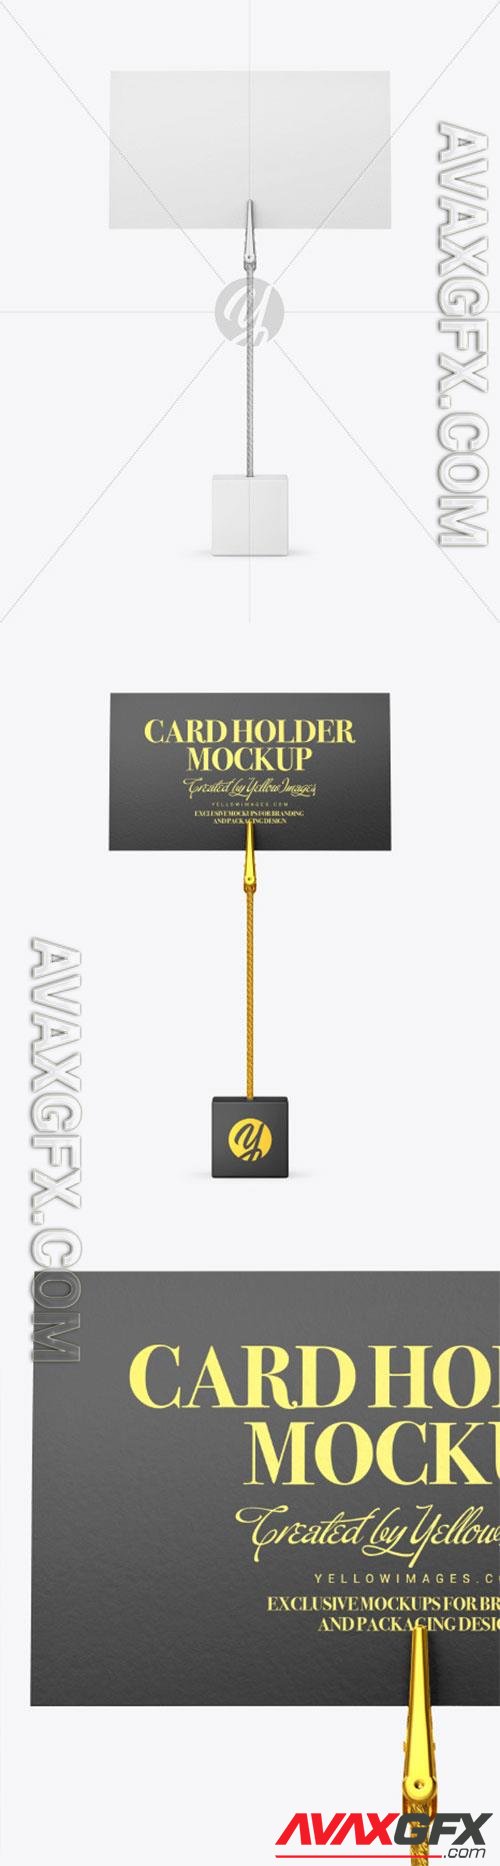 Card Holder Mockup 86536 TIF